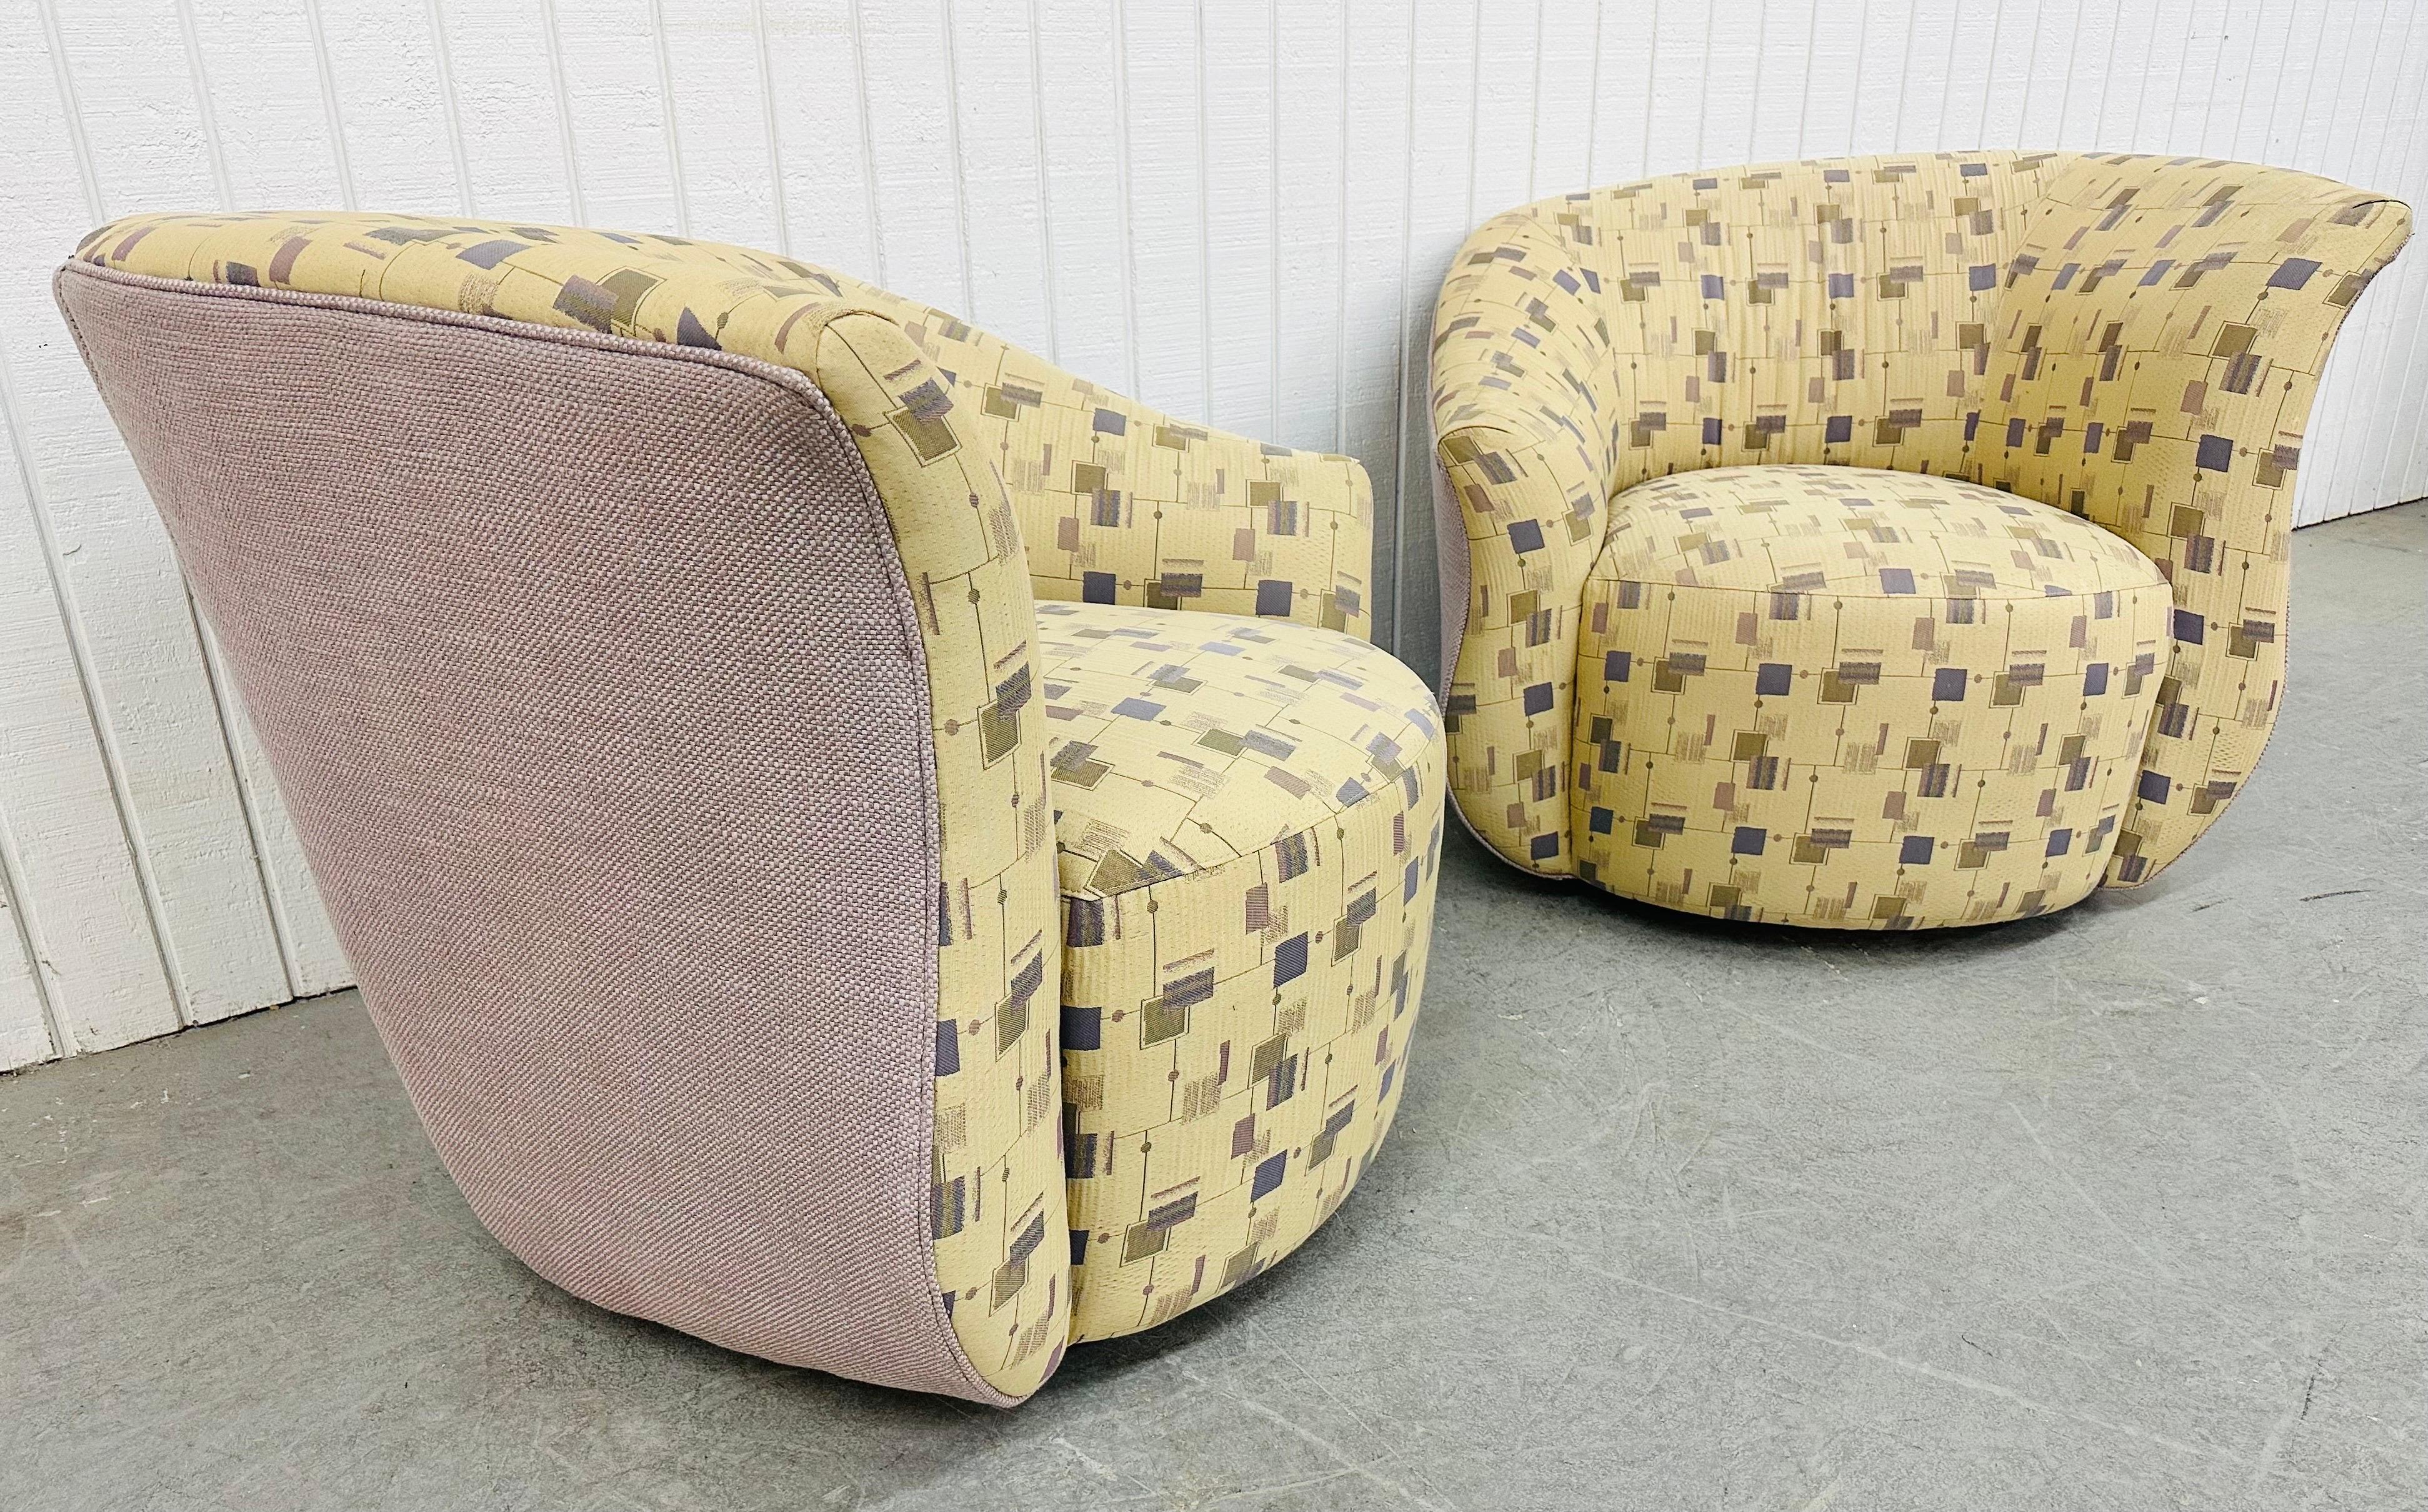 Cette annonce concerne une paire de chaises pivotantes surdimensionnées de style post-moderne. Doté d'un design postmoderne incurvé, d'un rembourrage géométrique original et de la possibilité de pivoter. Il s'agit d'une combinaison exceptionnelle de